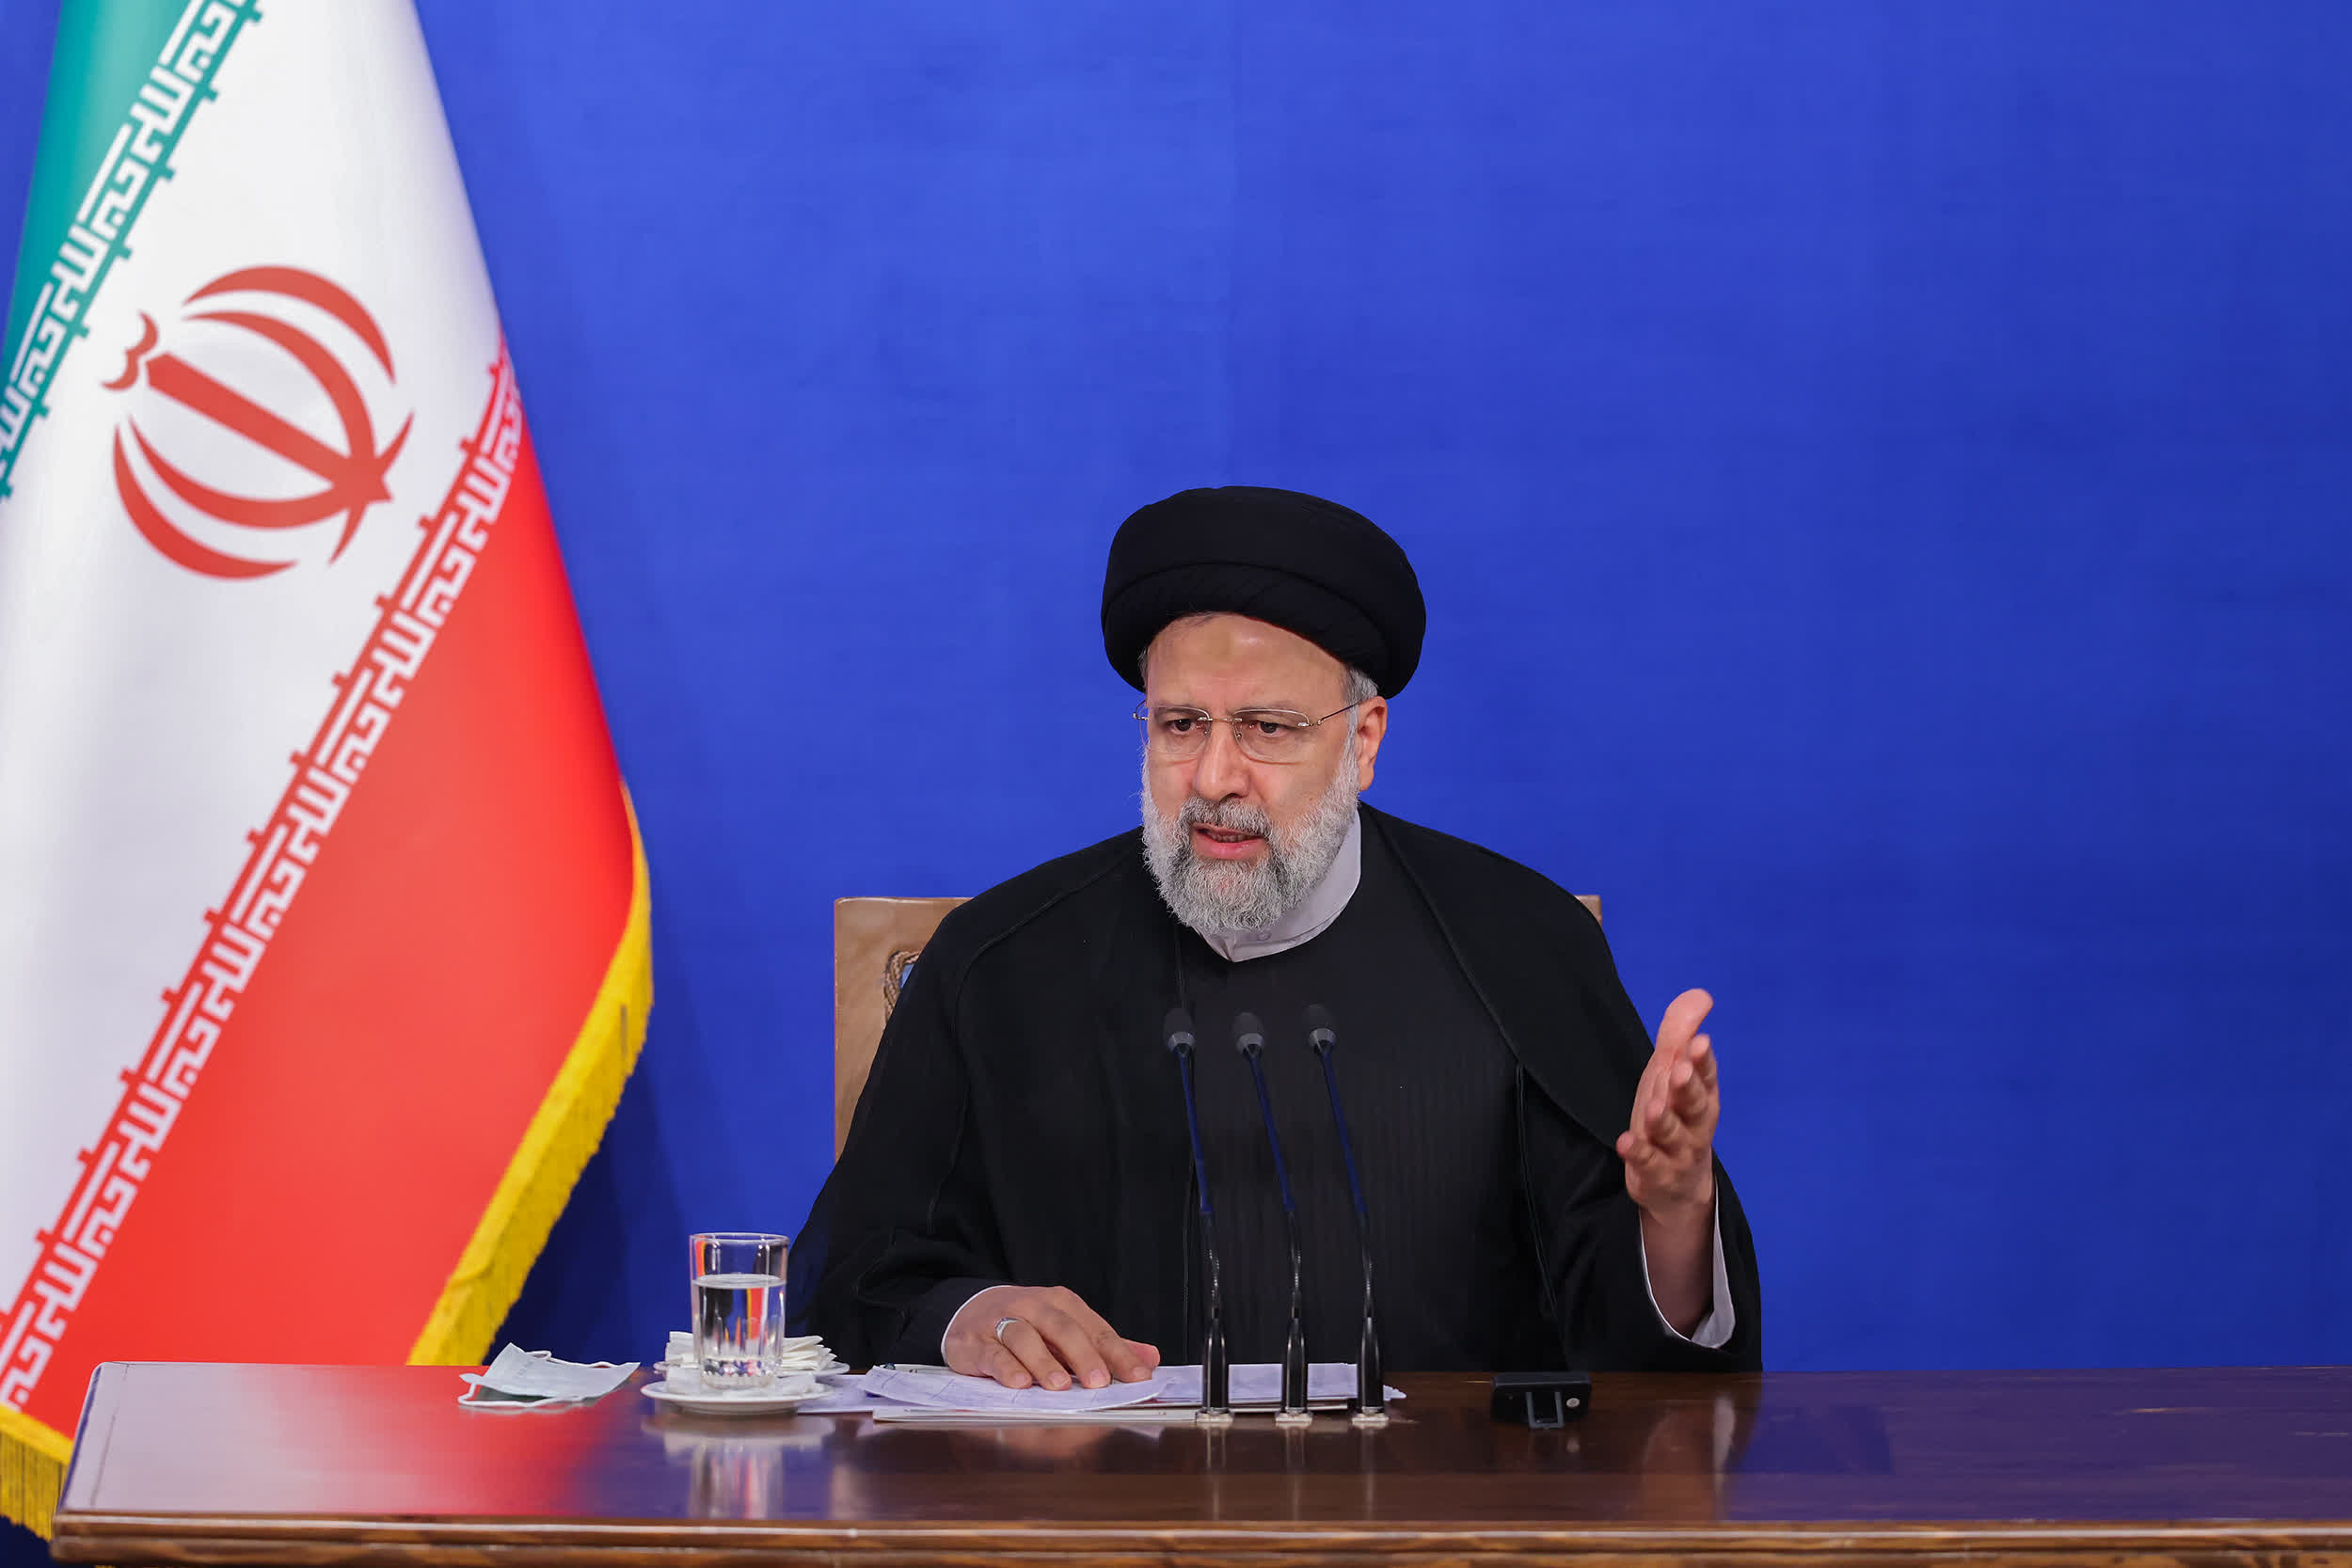 伊朗違反核協議 英法德拒撤制裁